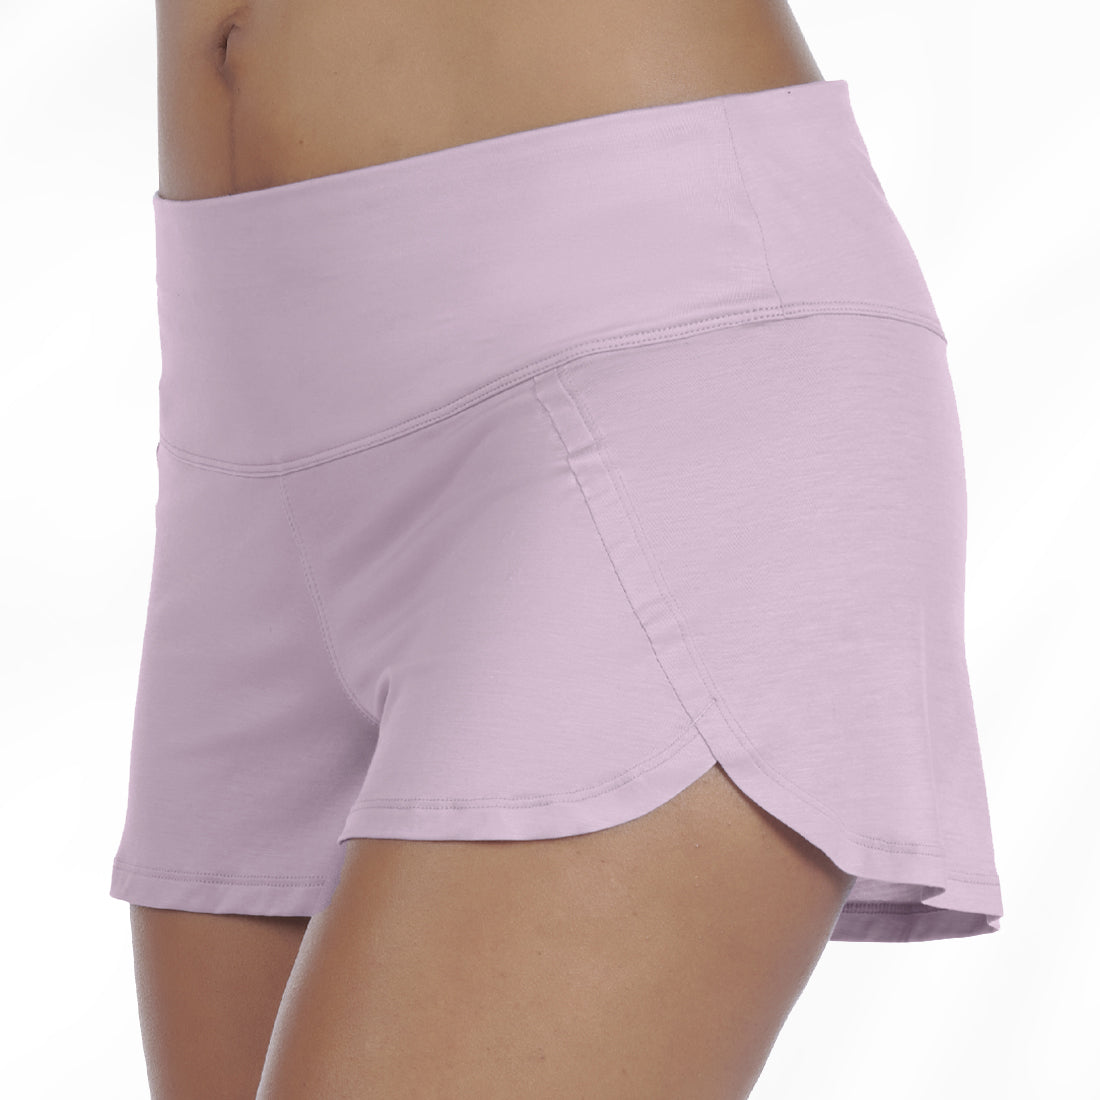 Women's cooling pajamas shorts || Lavender